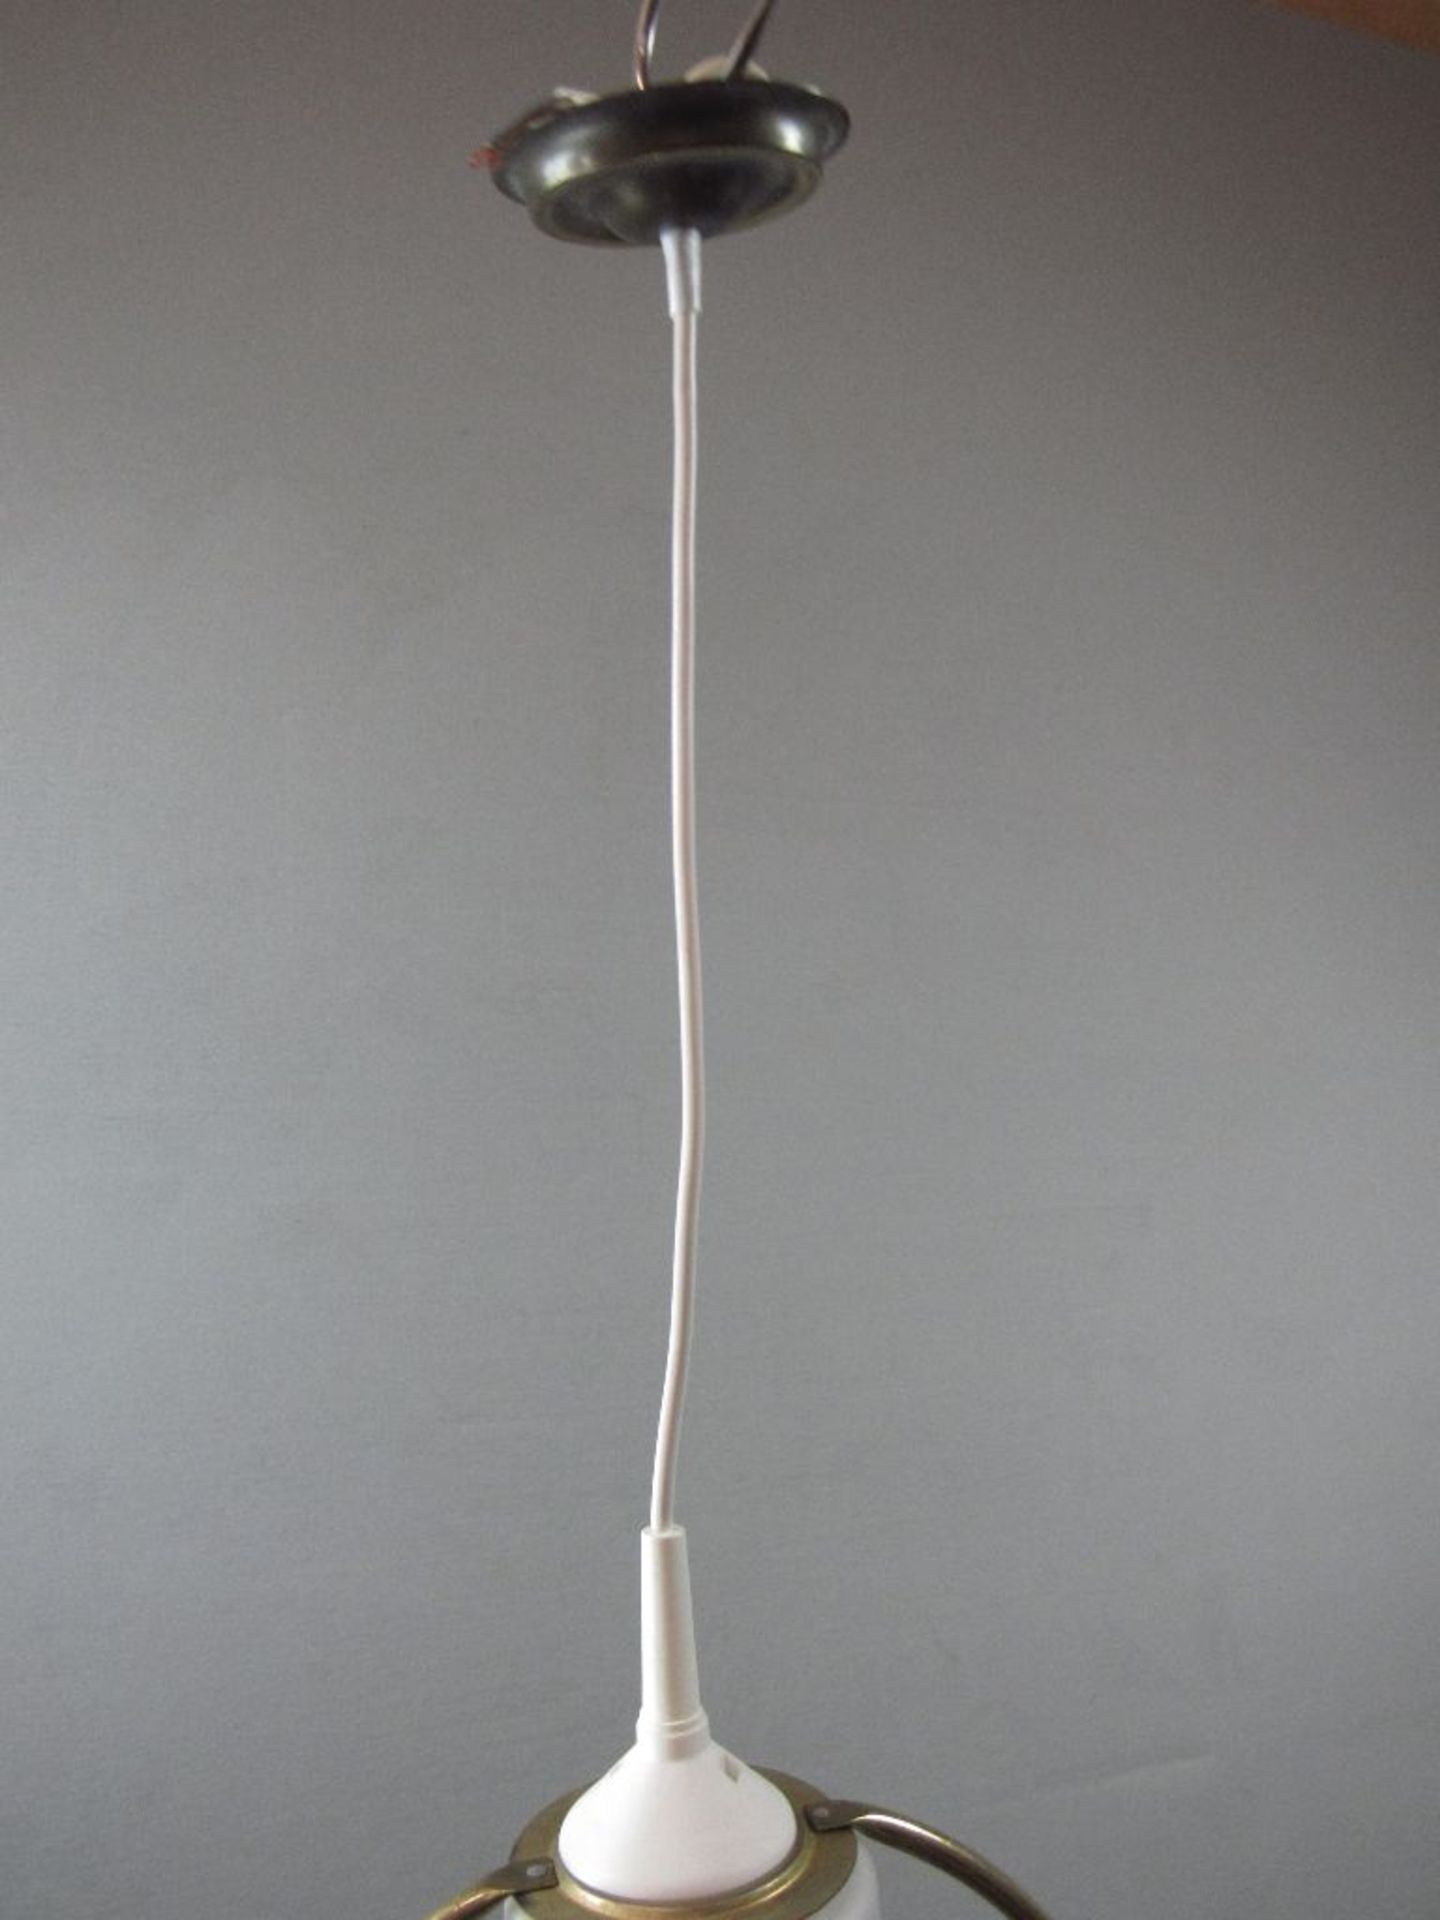 Deckenlampe in Art Deco neu elektrifiziert 32cm hoch - Image 2 of 3